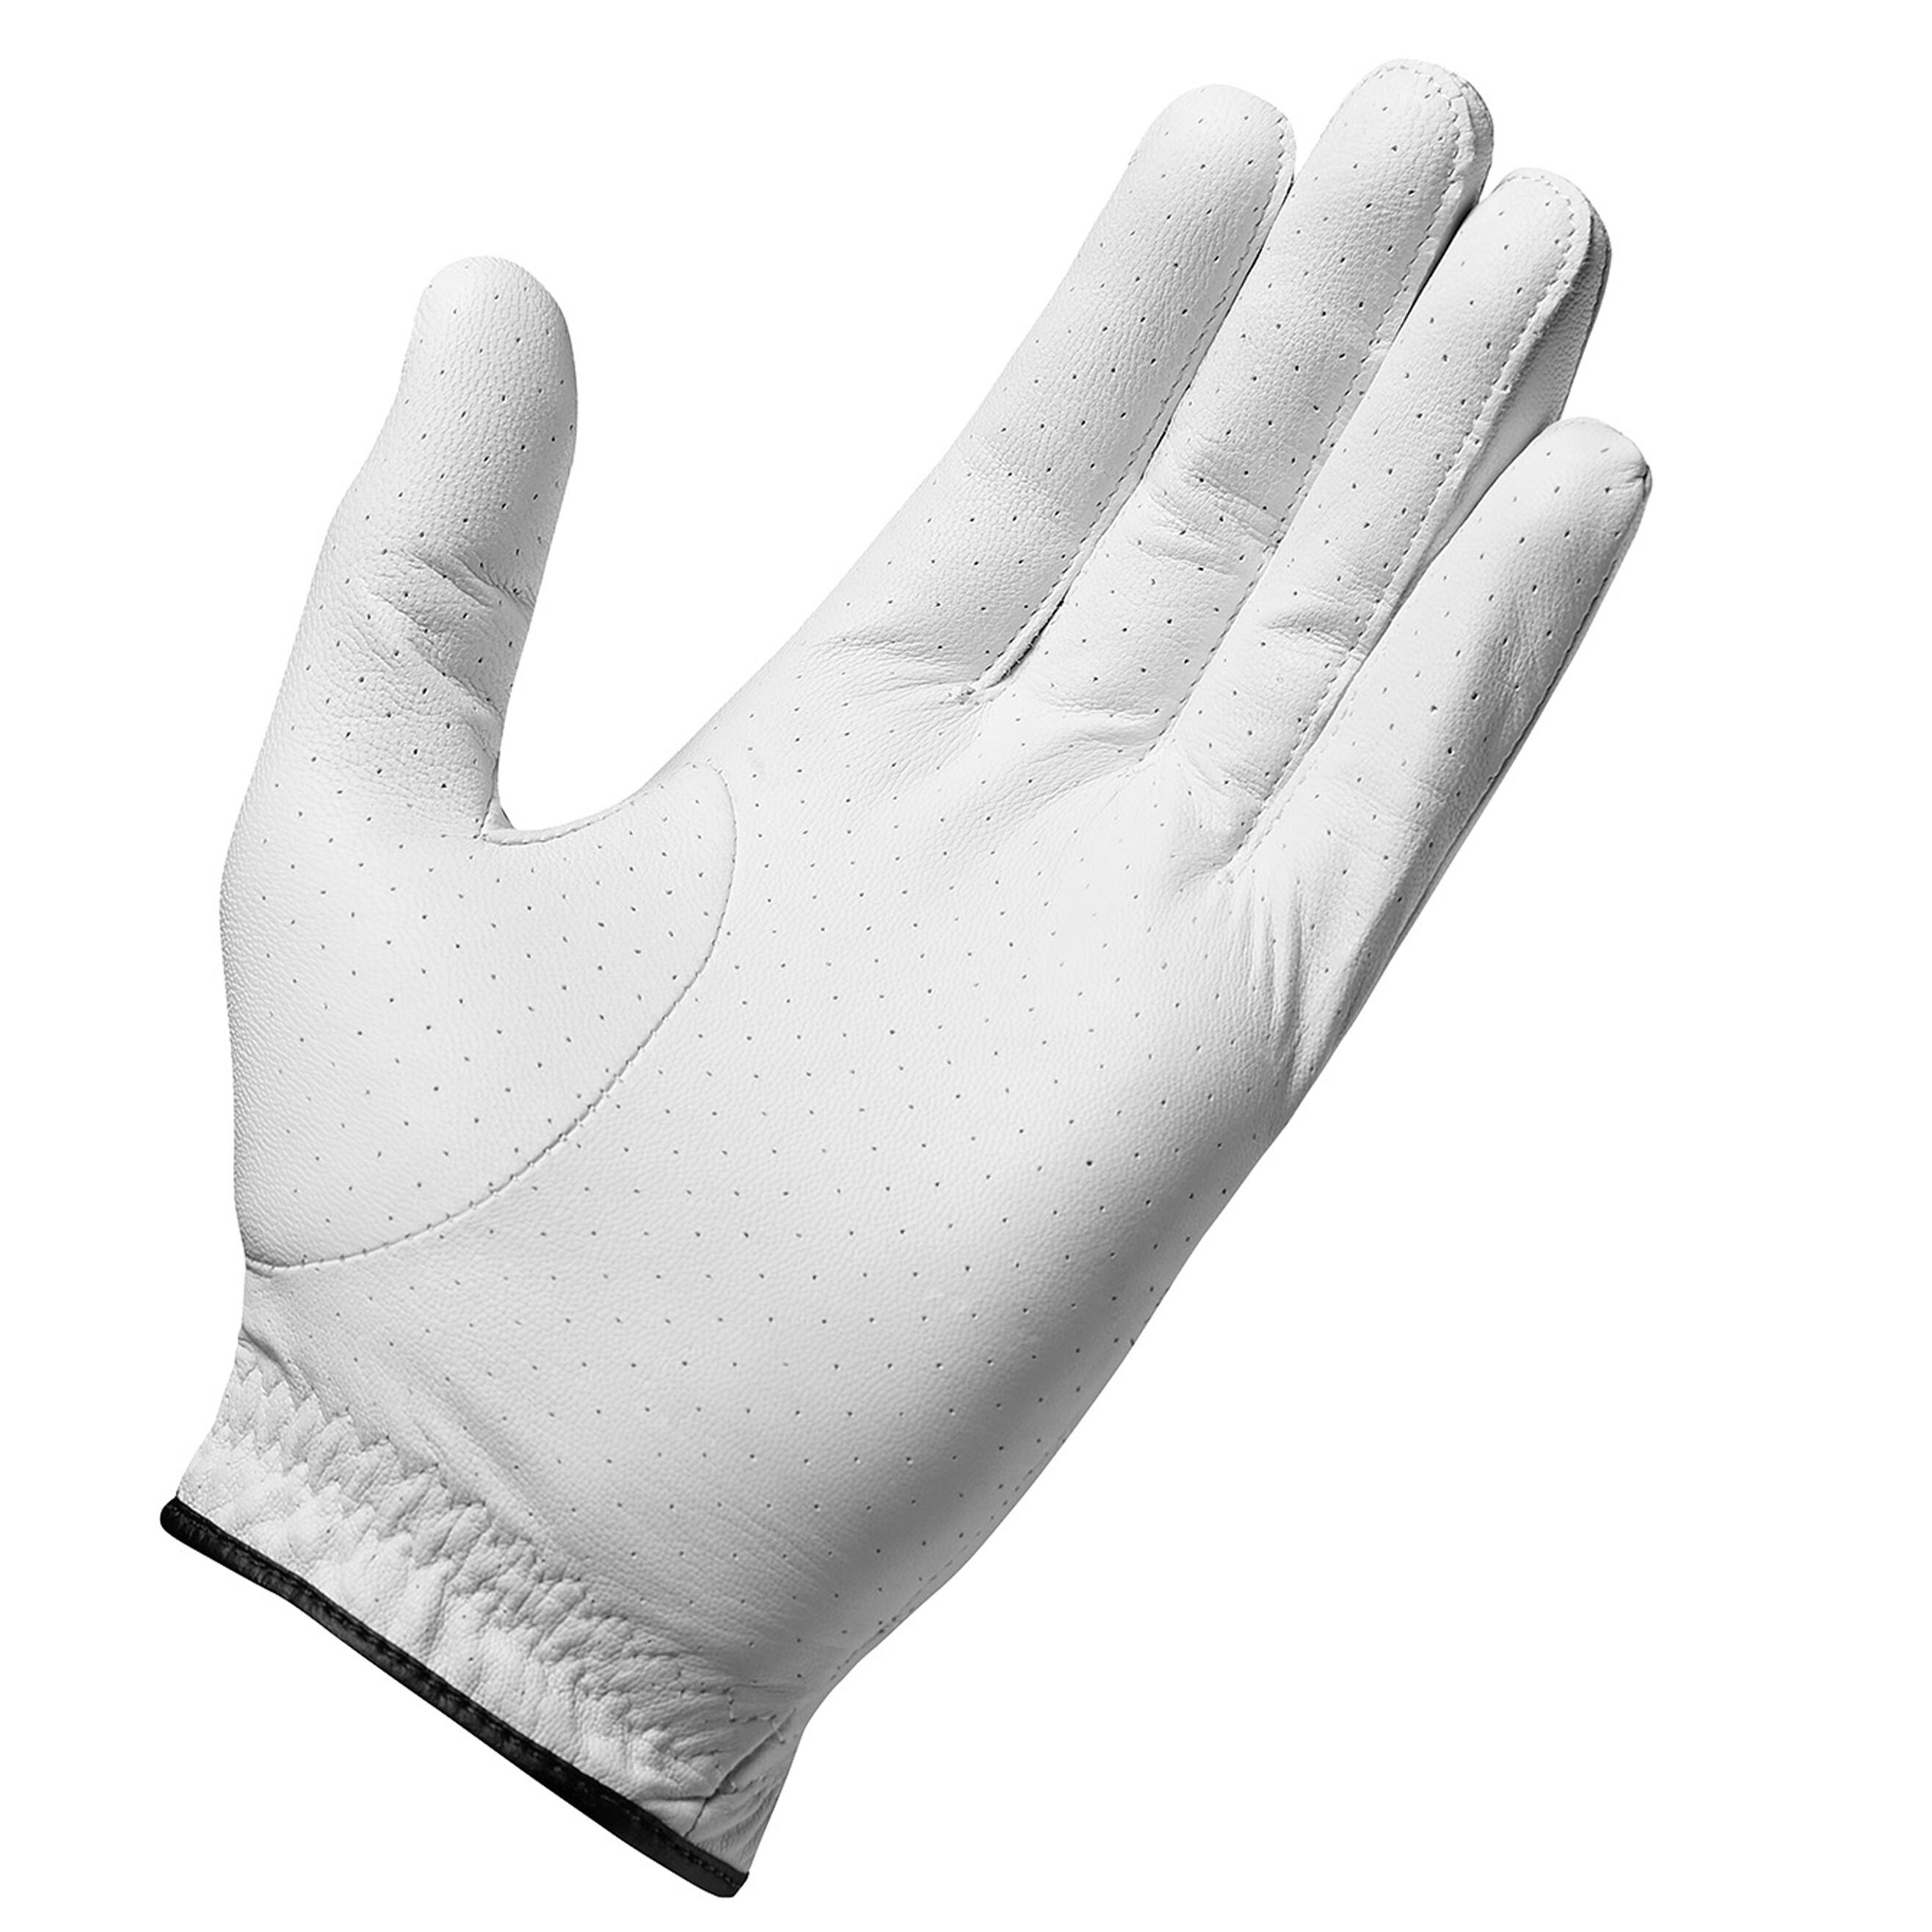 Men's golf right-handed RBZ glove white 2/3